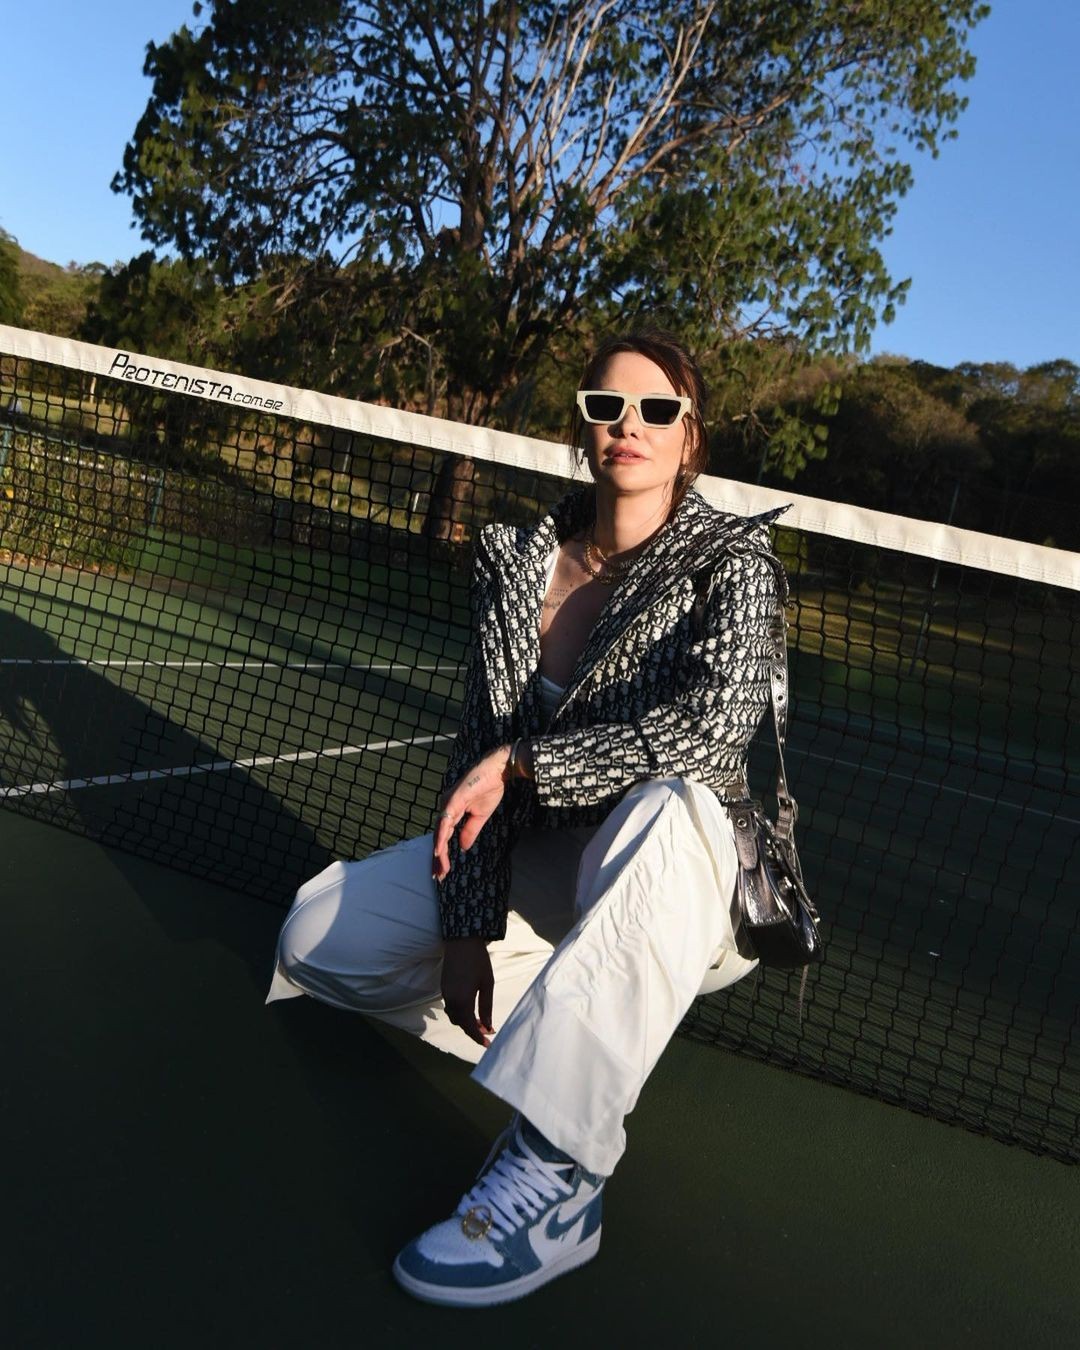 Marcela McGowan posou para fotos em uma quadra de tênis (Foto: Reprodução/Instagram)